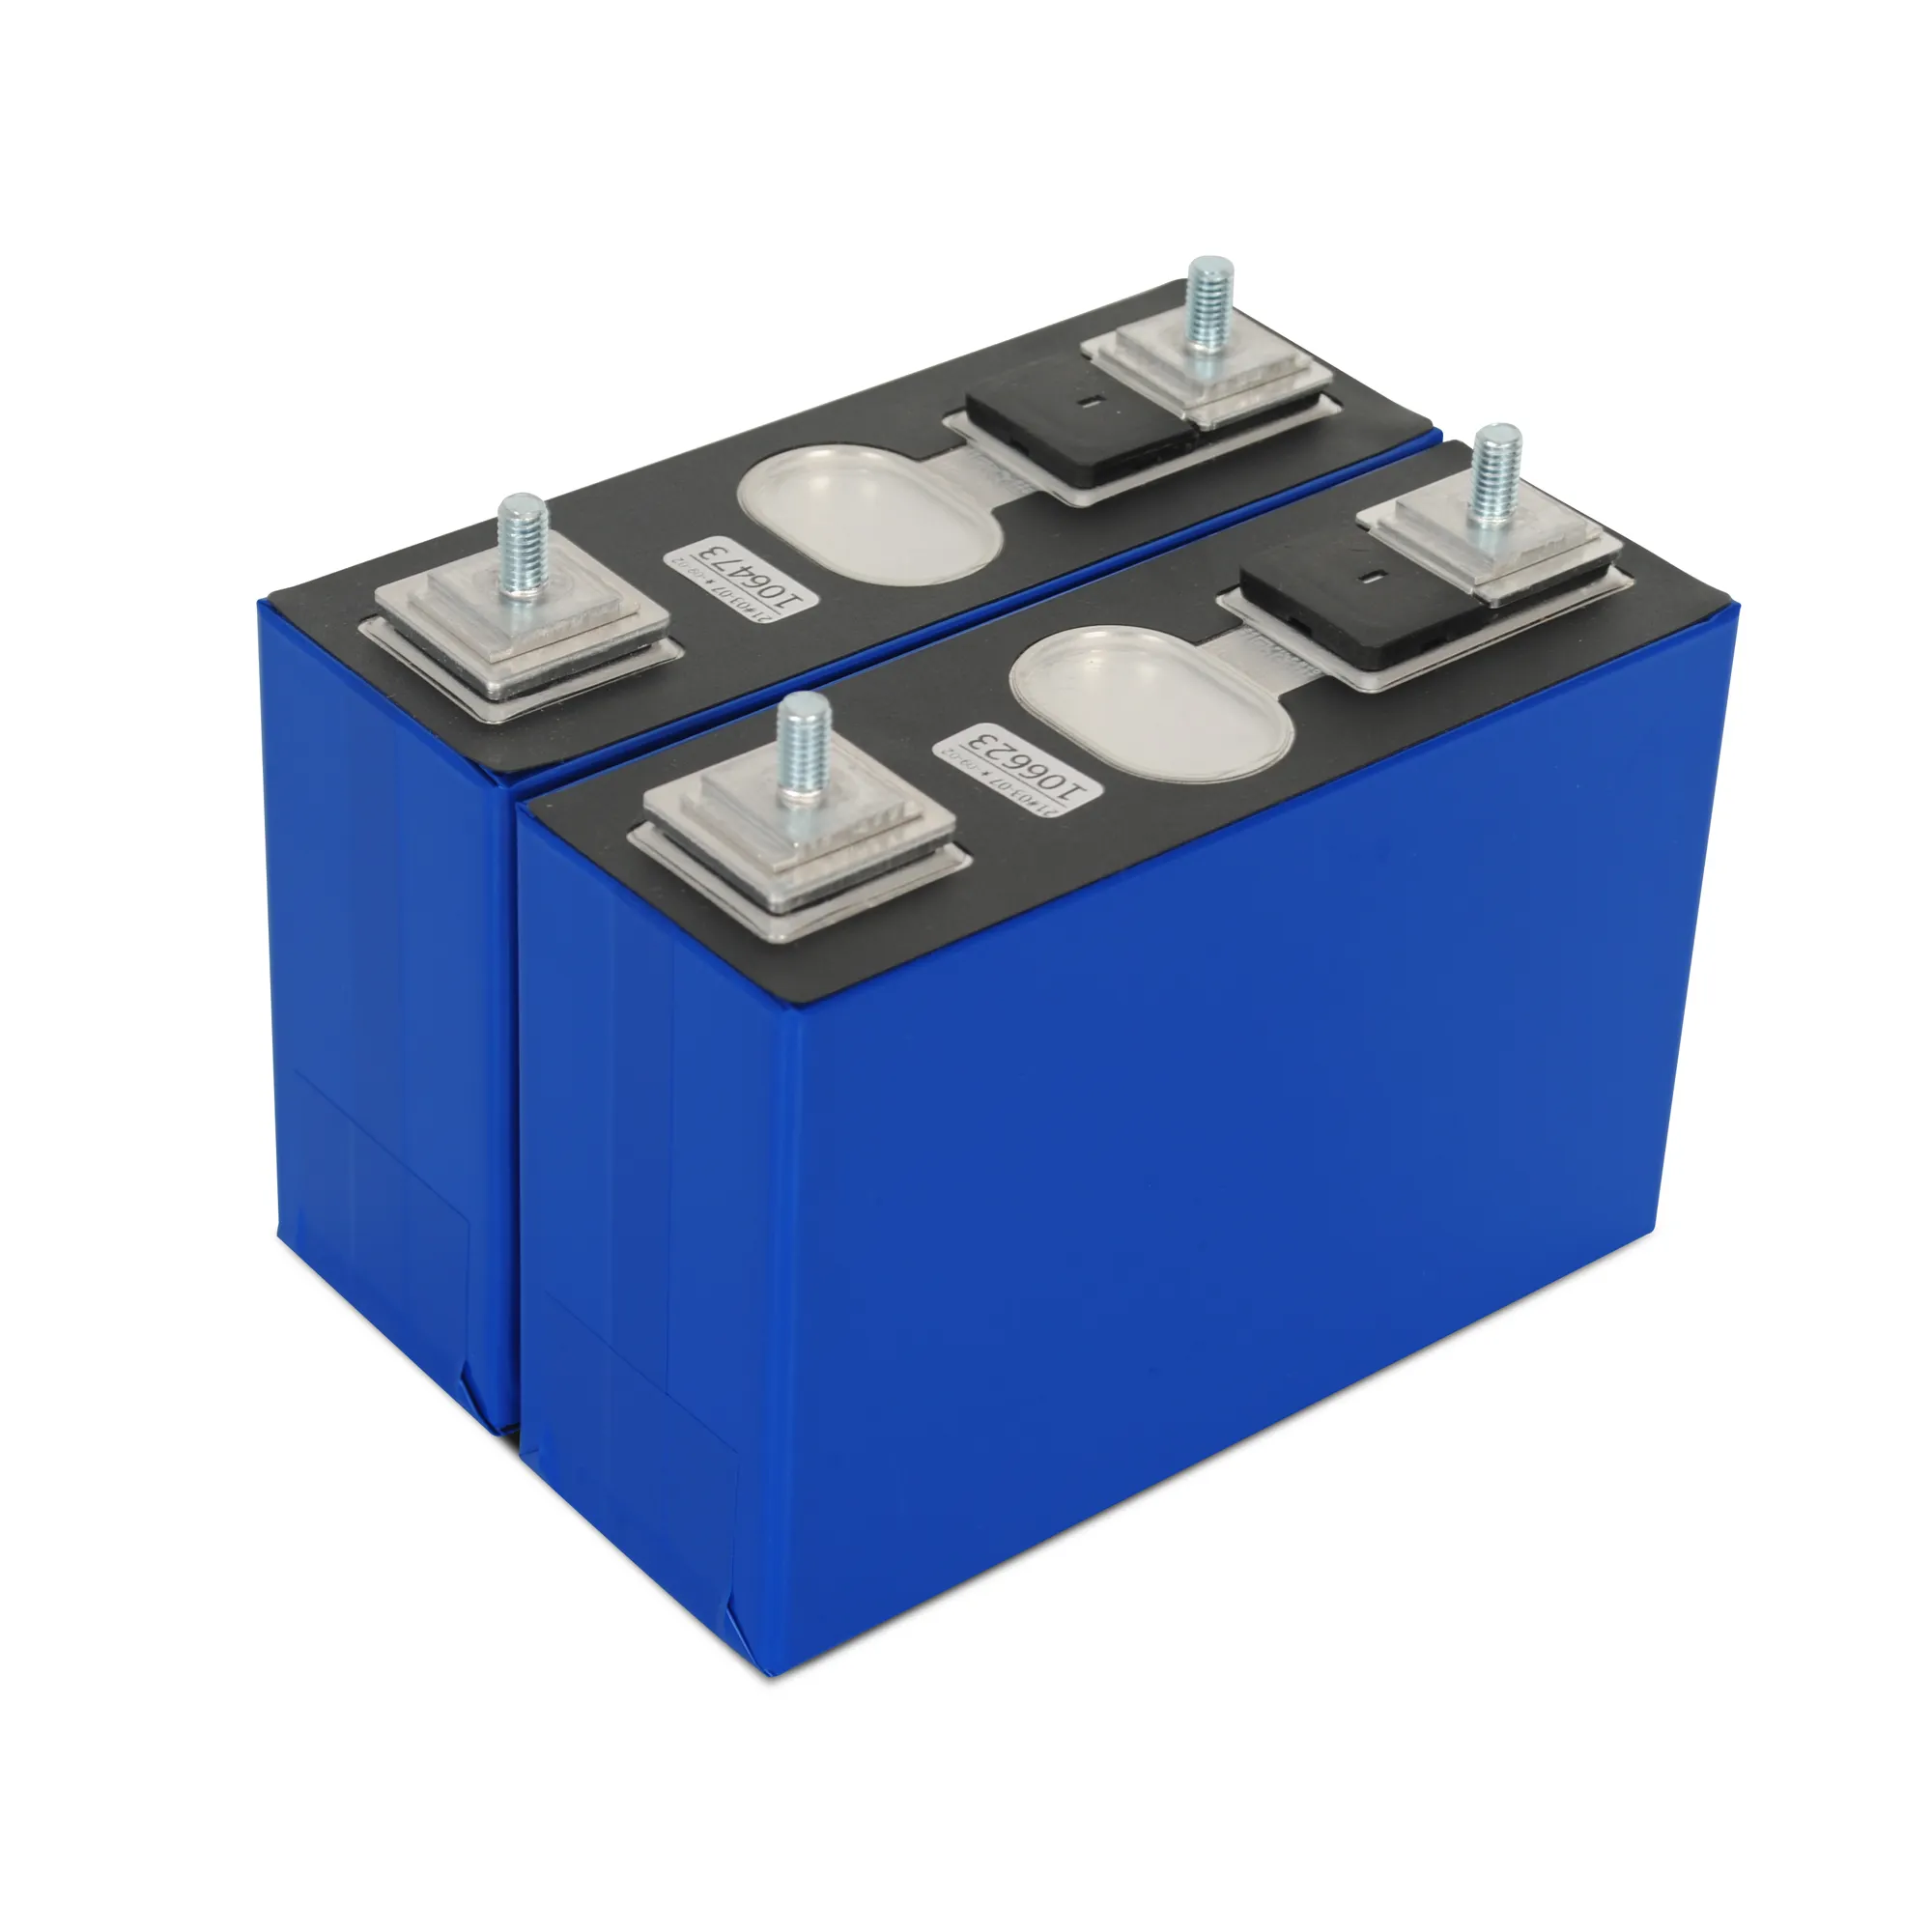 Cellule de batterie Lithium-Ion Rechargeable à chaud 3.2V, 100Ah, 105Ah, 115Ah, 120Ah, LiFePO4, pour EV RV, UPS, système de stockage d'énergie solaire domestique